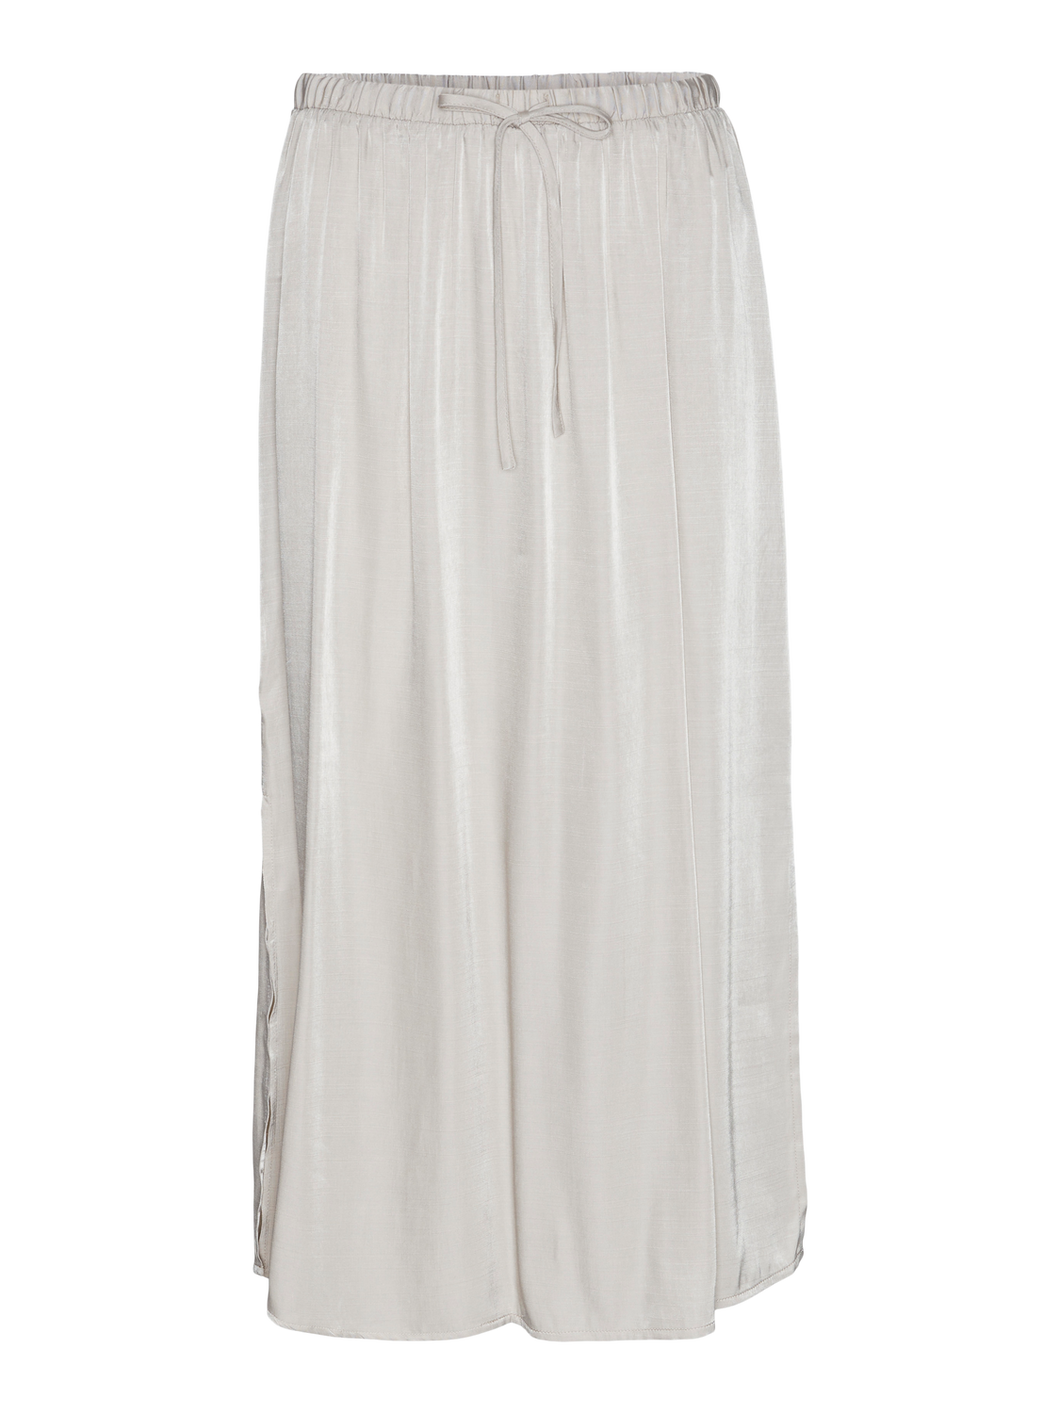 VMINA Skirt - Silver Lining